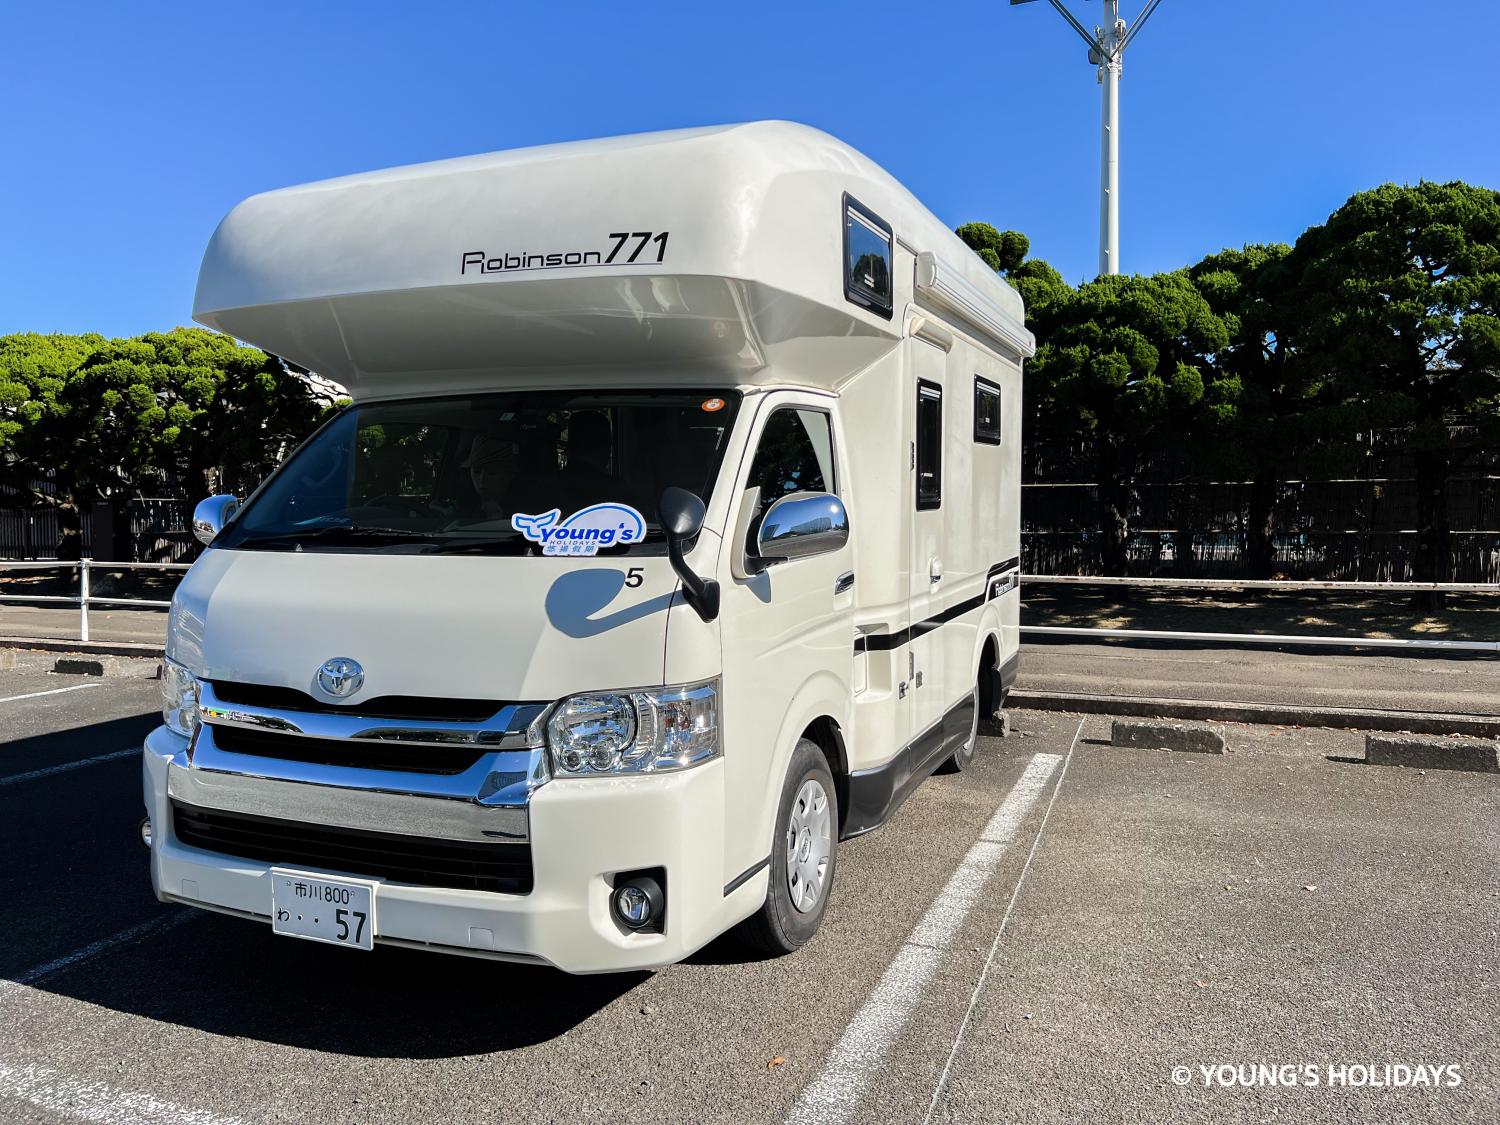 【沖繩】五人日本露營車租借48小時自駕遊自由行套票(C-ROBINSON771)